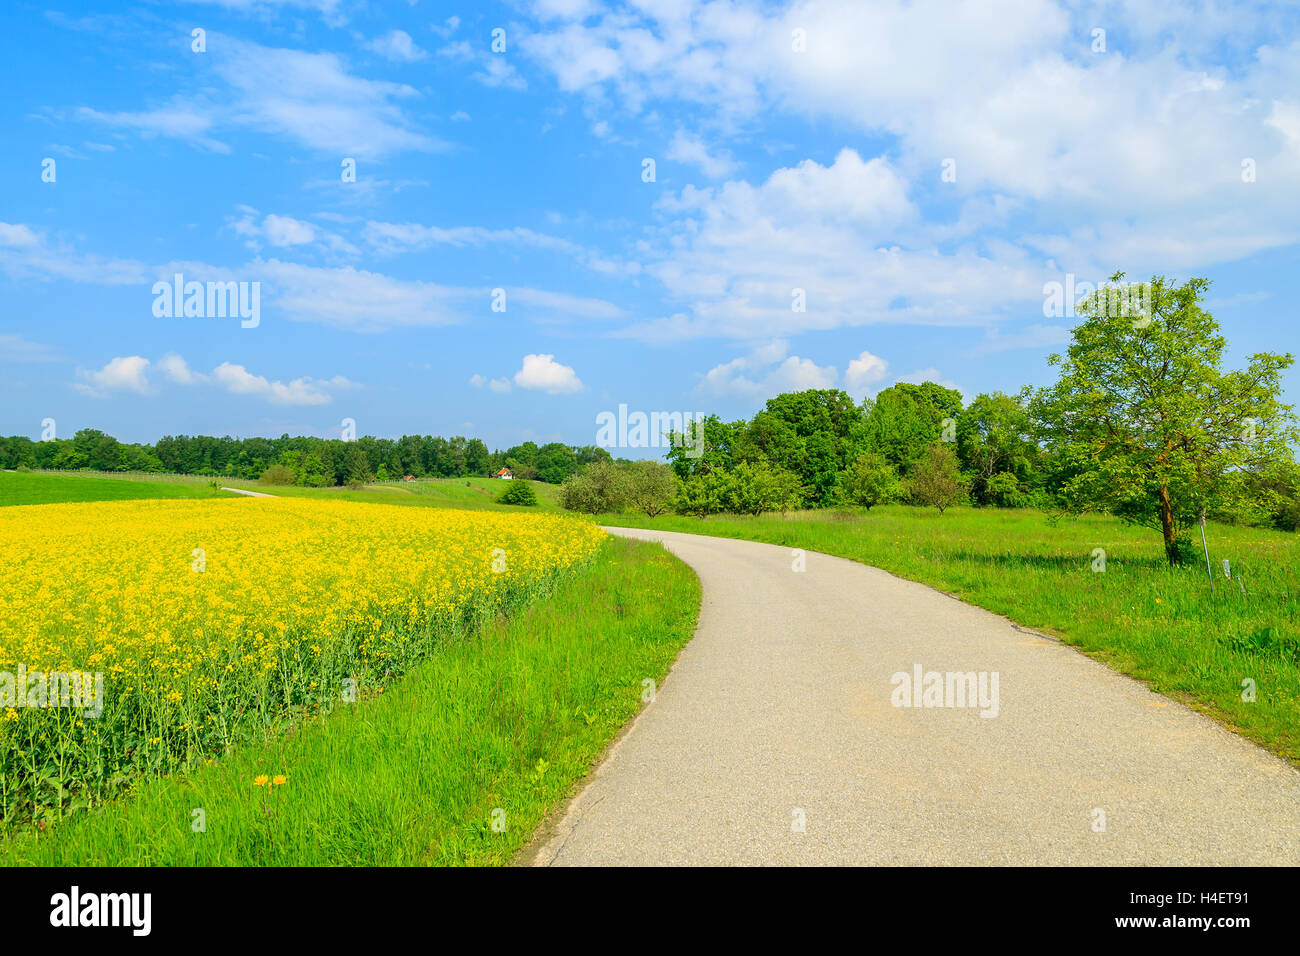 Landschaft-Straße entlang gelben Raps Blumenfeld und blauer Himmel, Burgenland, Süd-Österreich Stockfoto